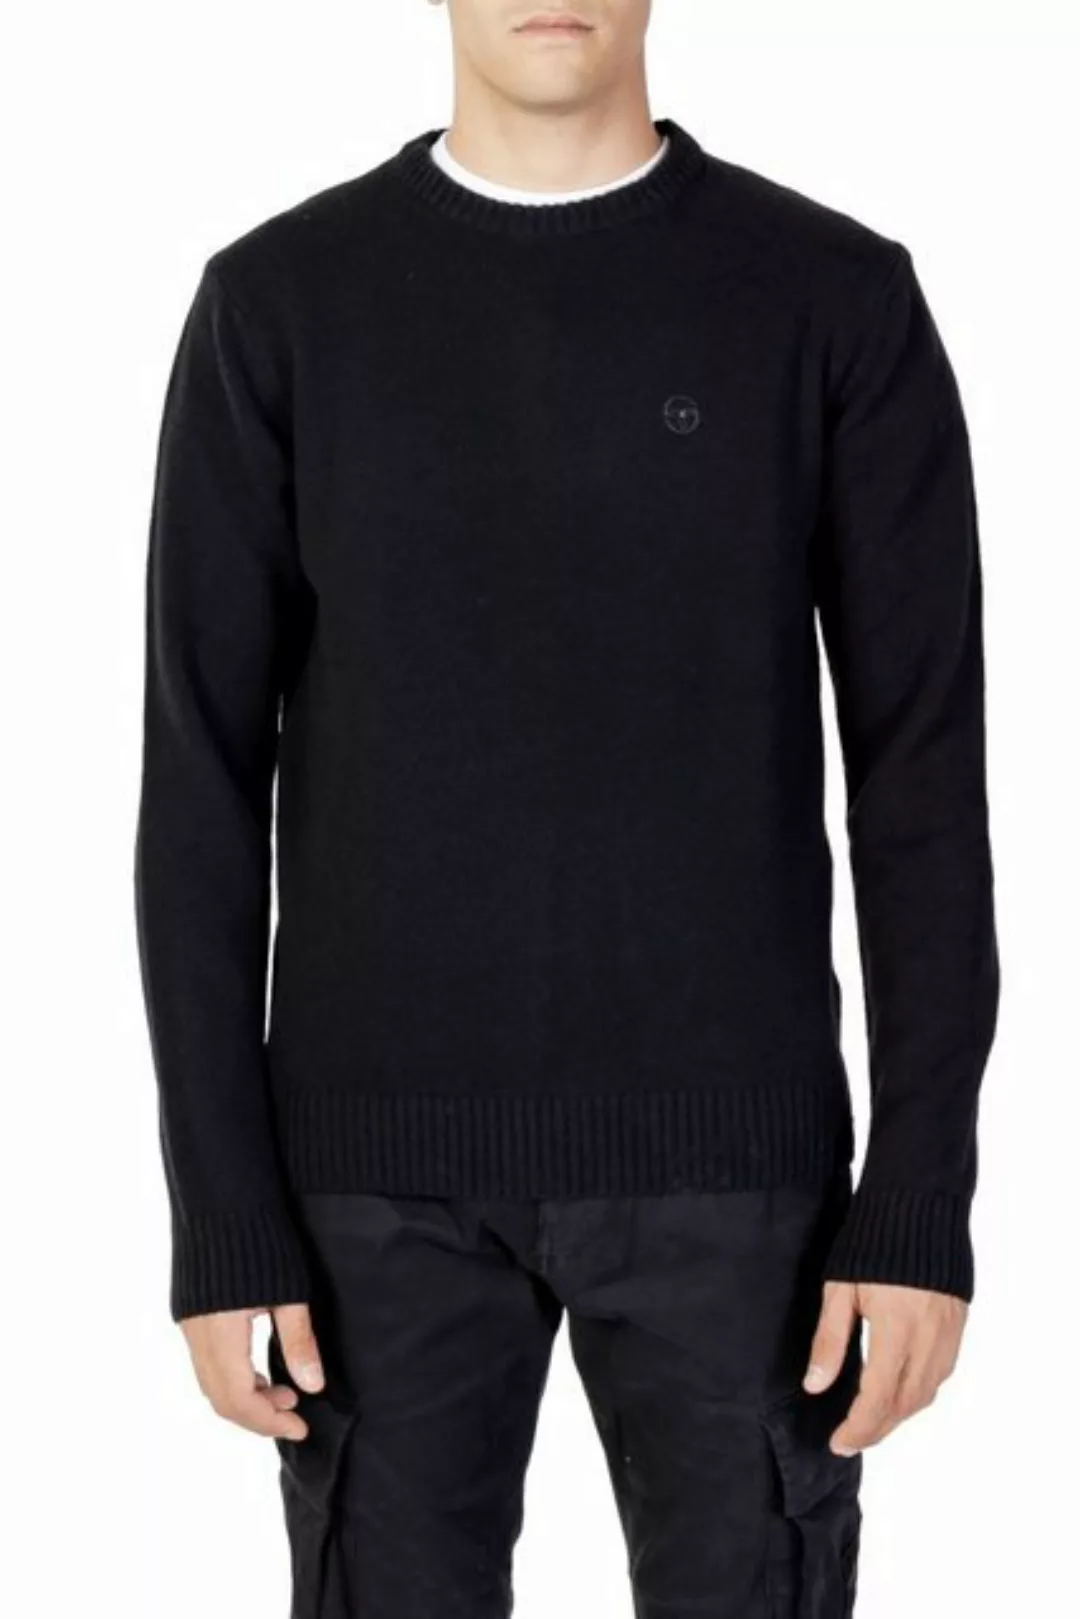 Sergio Tacchini Sweatshirt günstig online kaufen